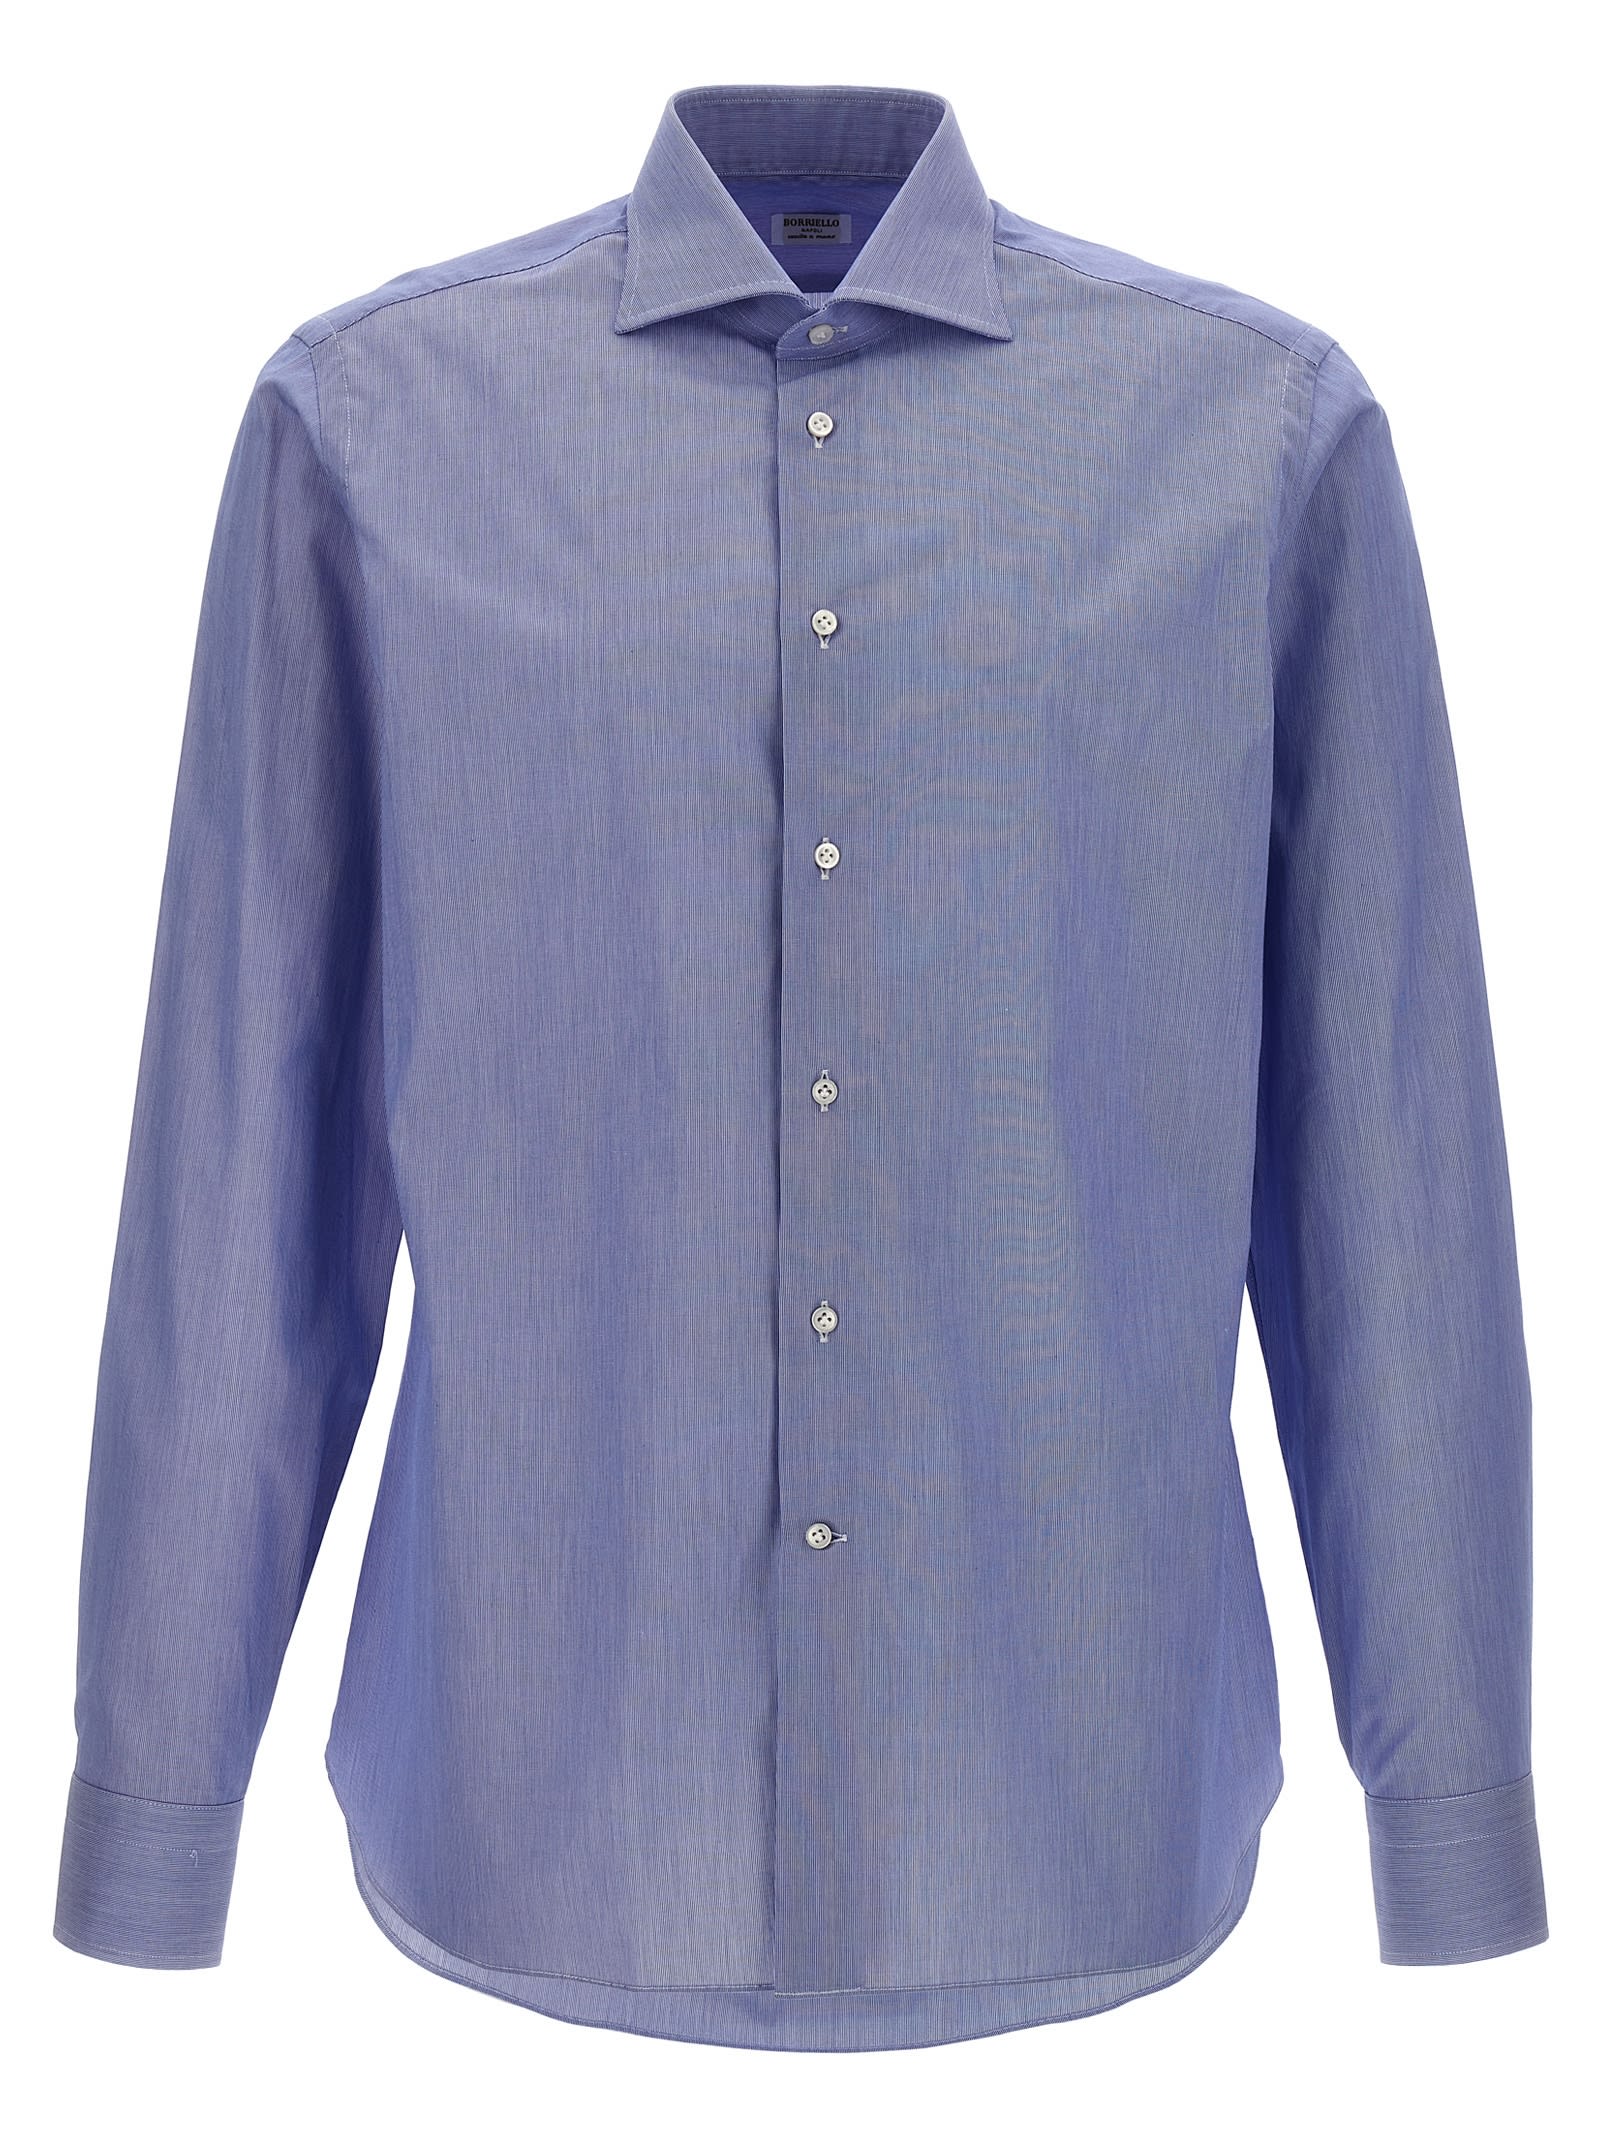 Borriello Napoli Falso Unito Cotton Shirt In Light Blue